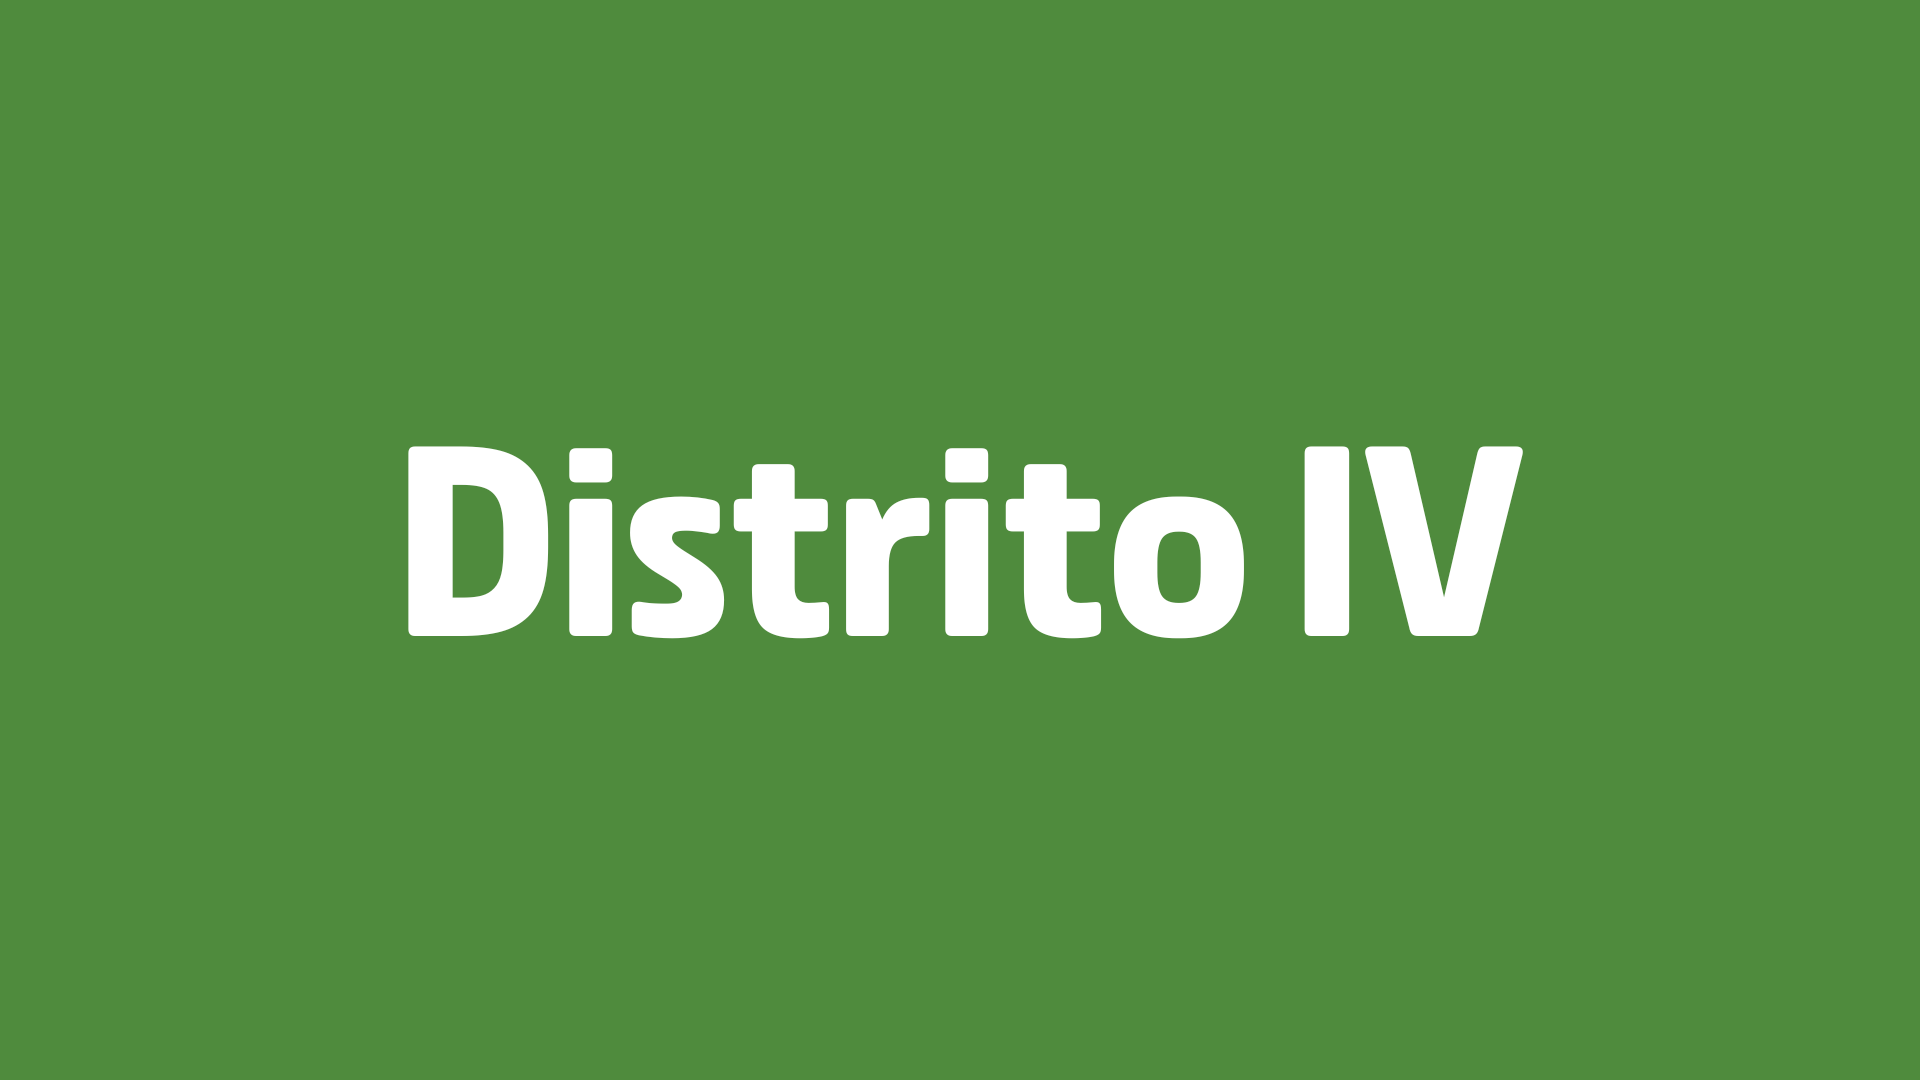 Distrito IV